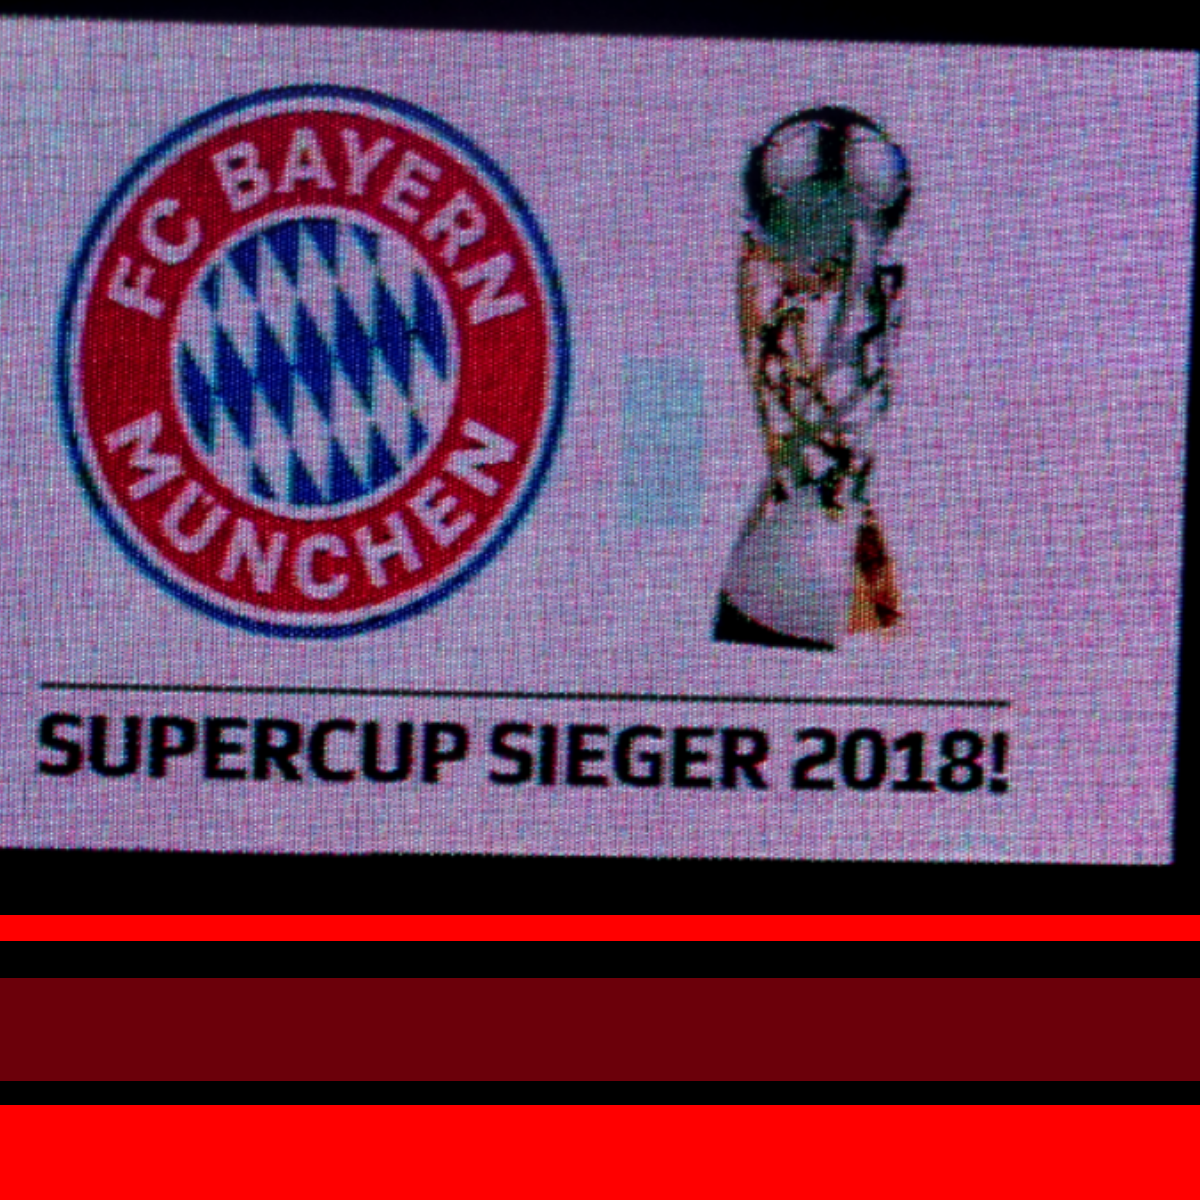 Superpokalsieg 2018!